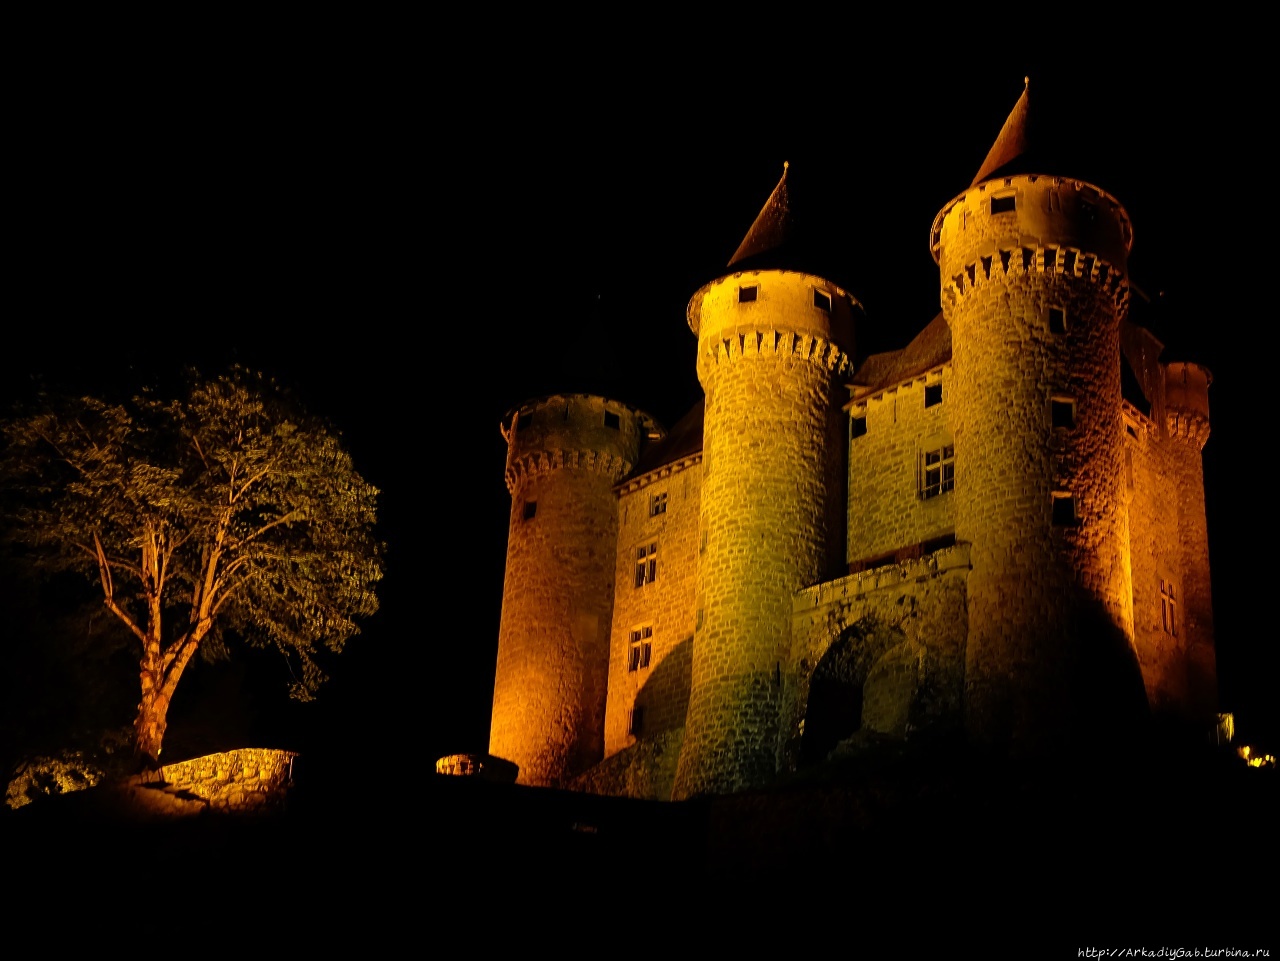 Но только ТЫ замок моей мечты! Ланобр, Франция